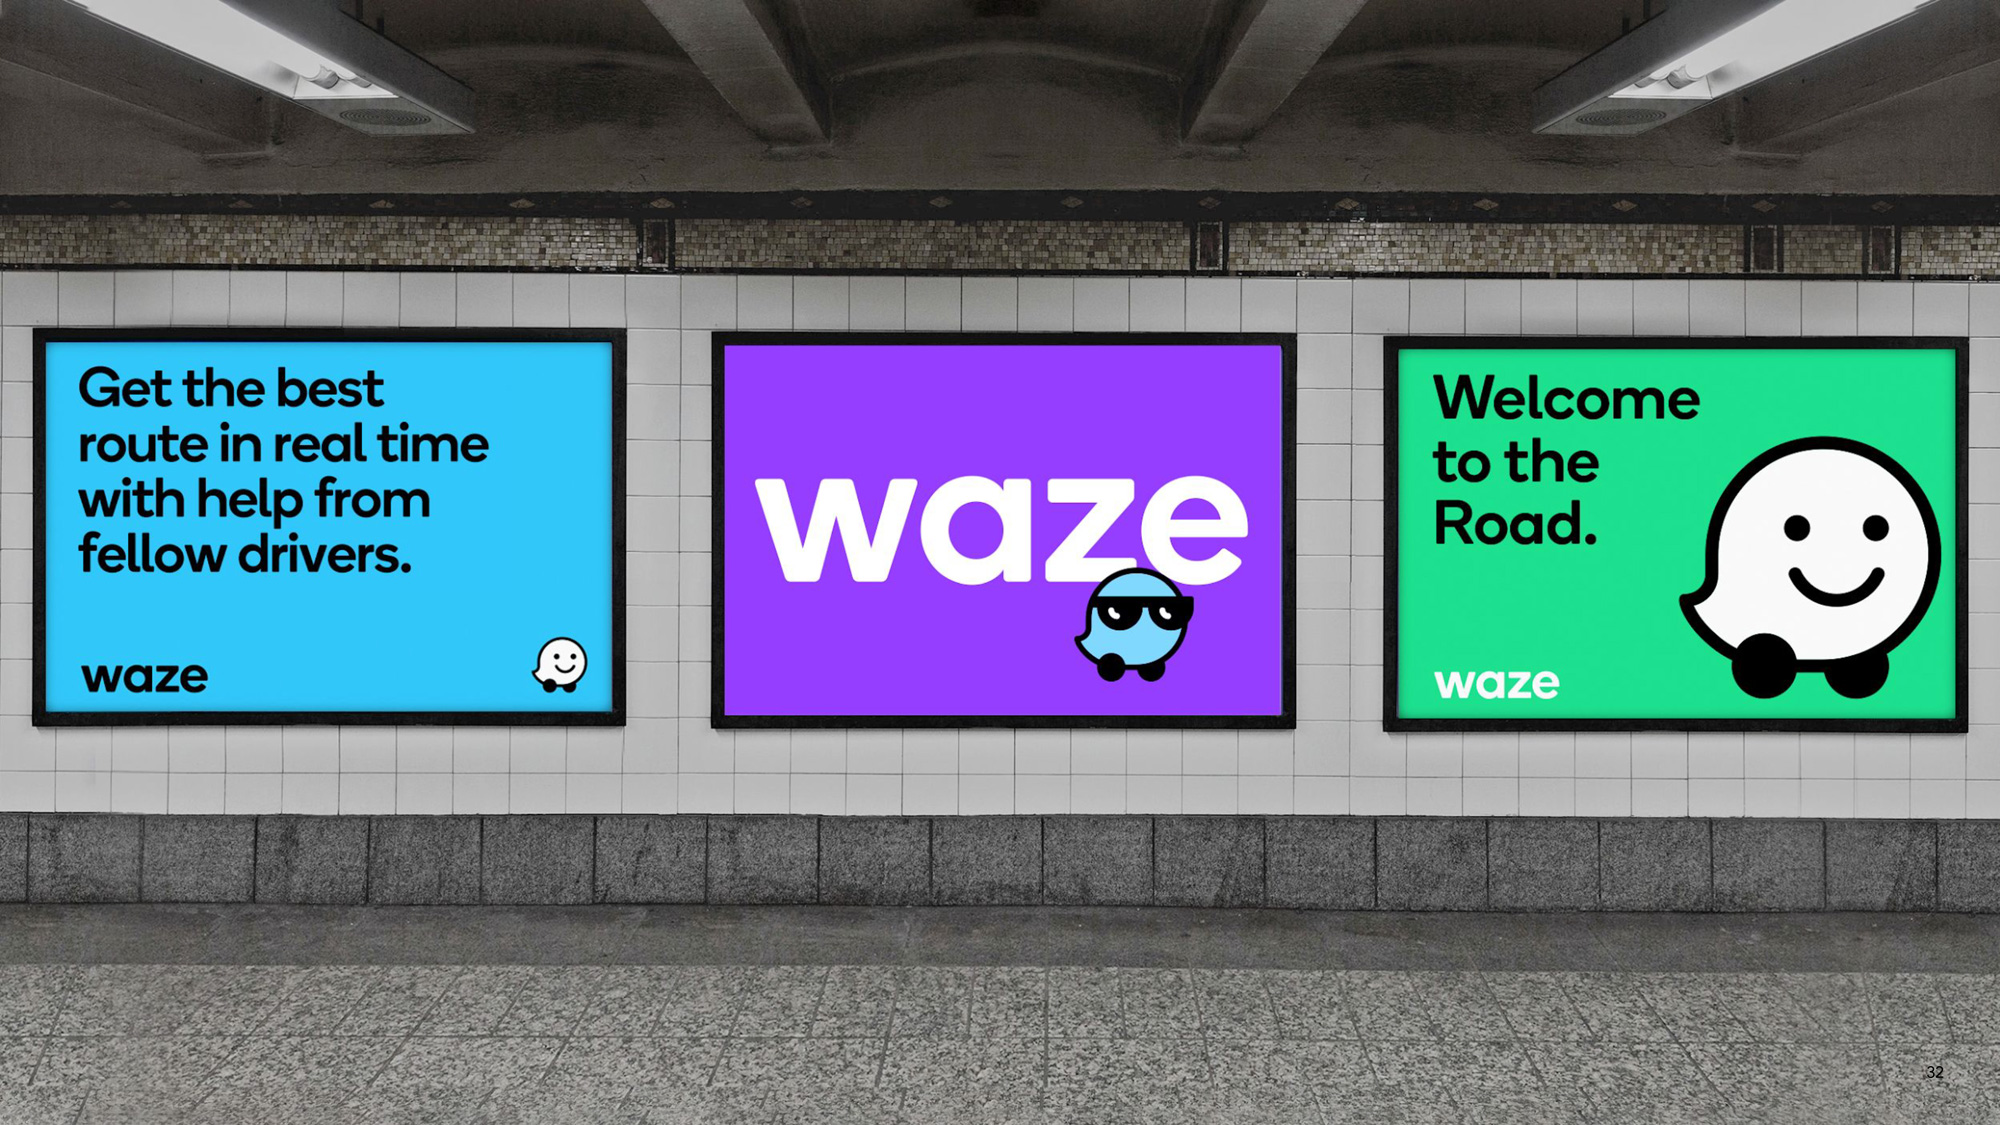 New Logo and Identity for Waze by Pentagram